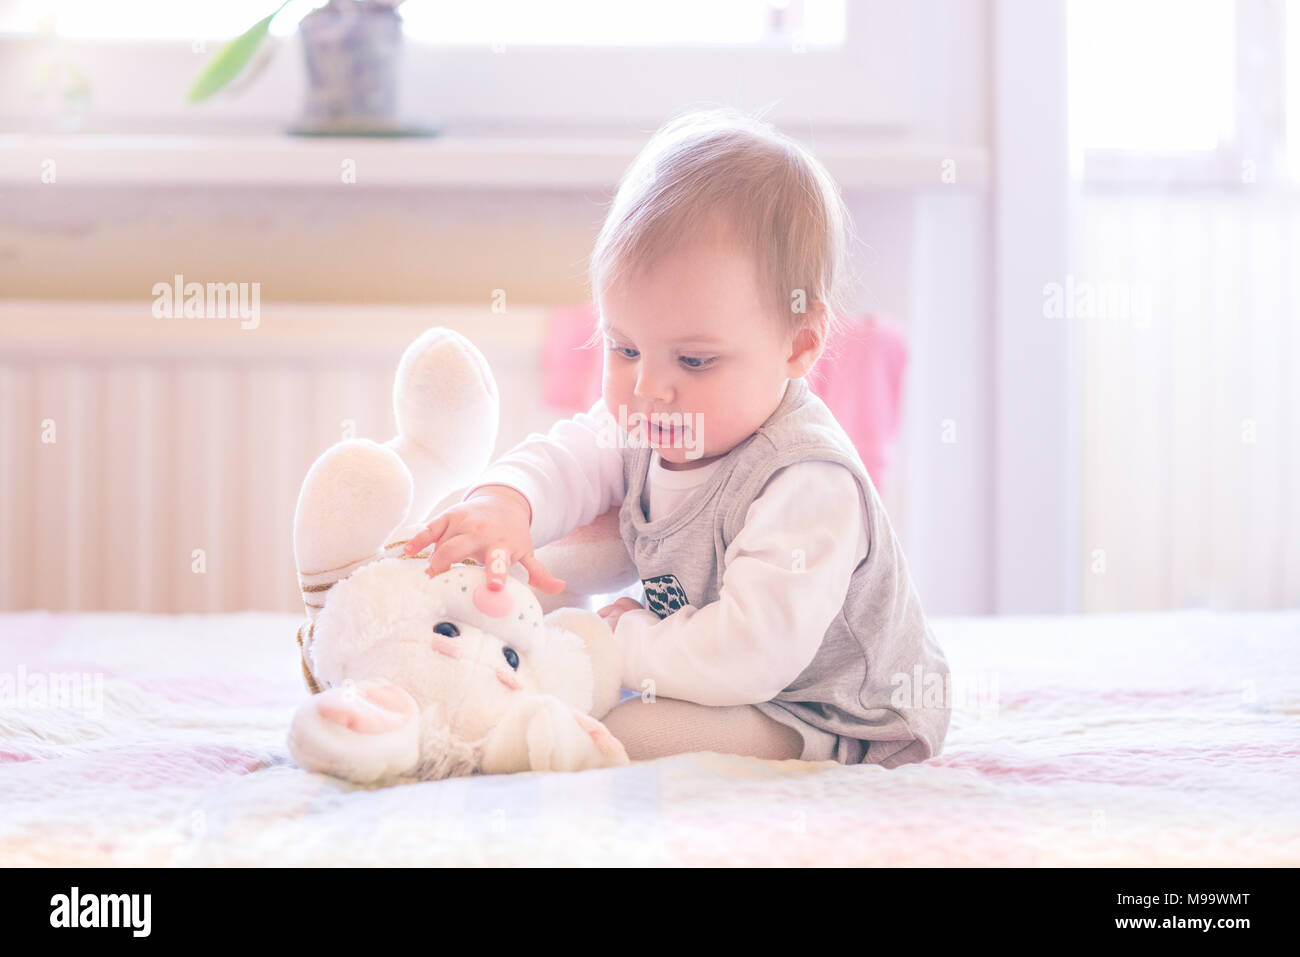 1 Jahr Alt Baby Madchen Spielen Mit Einem Plusch Bunny Stockfotografie Alamy